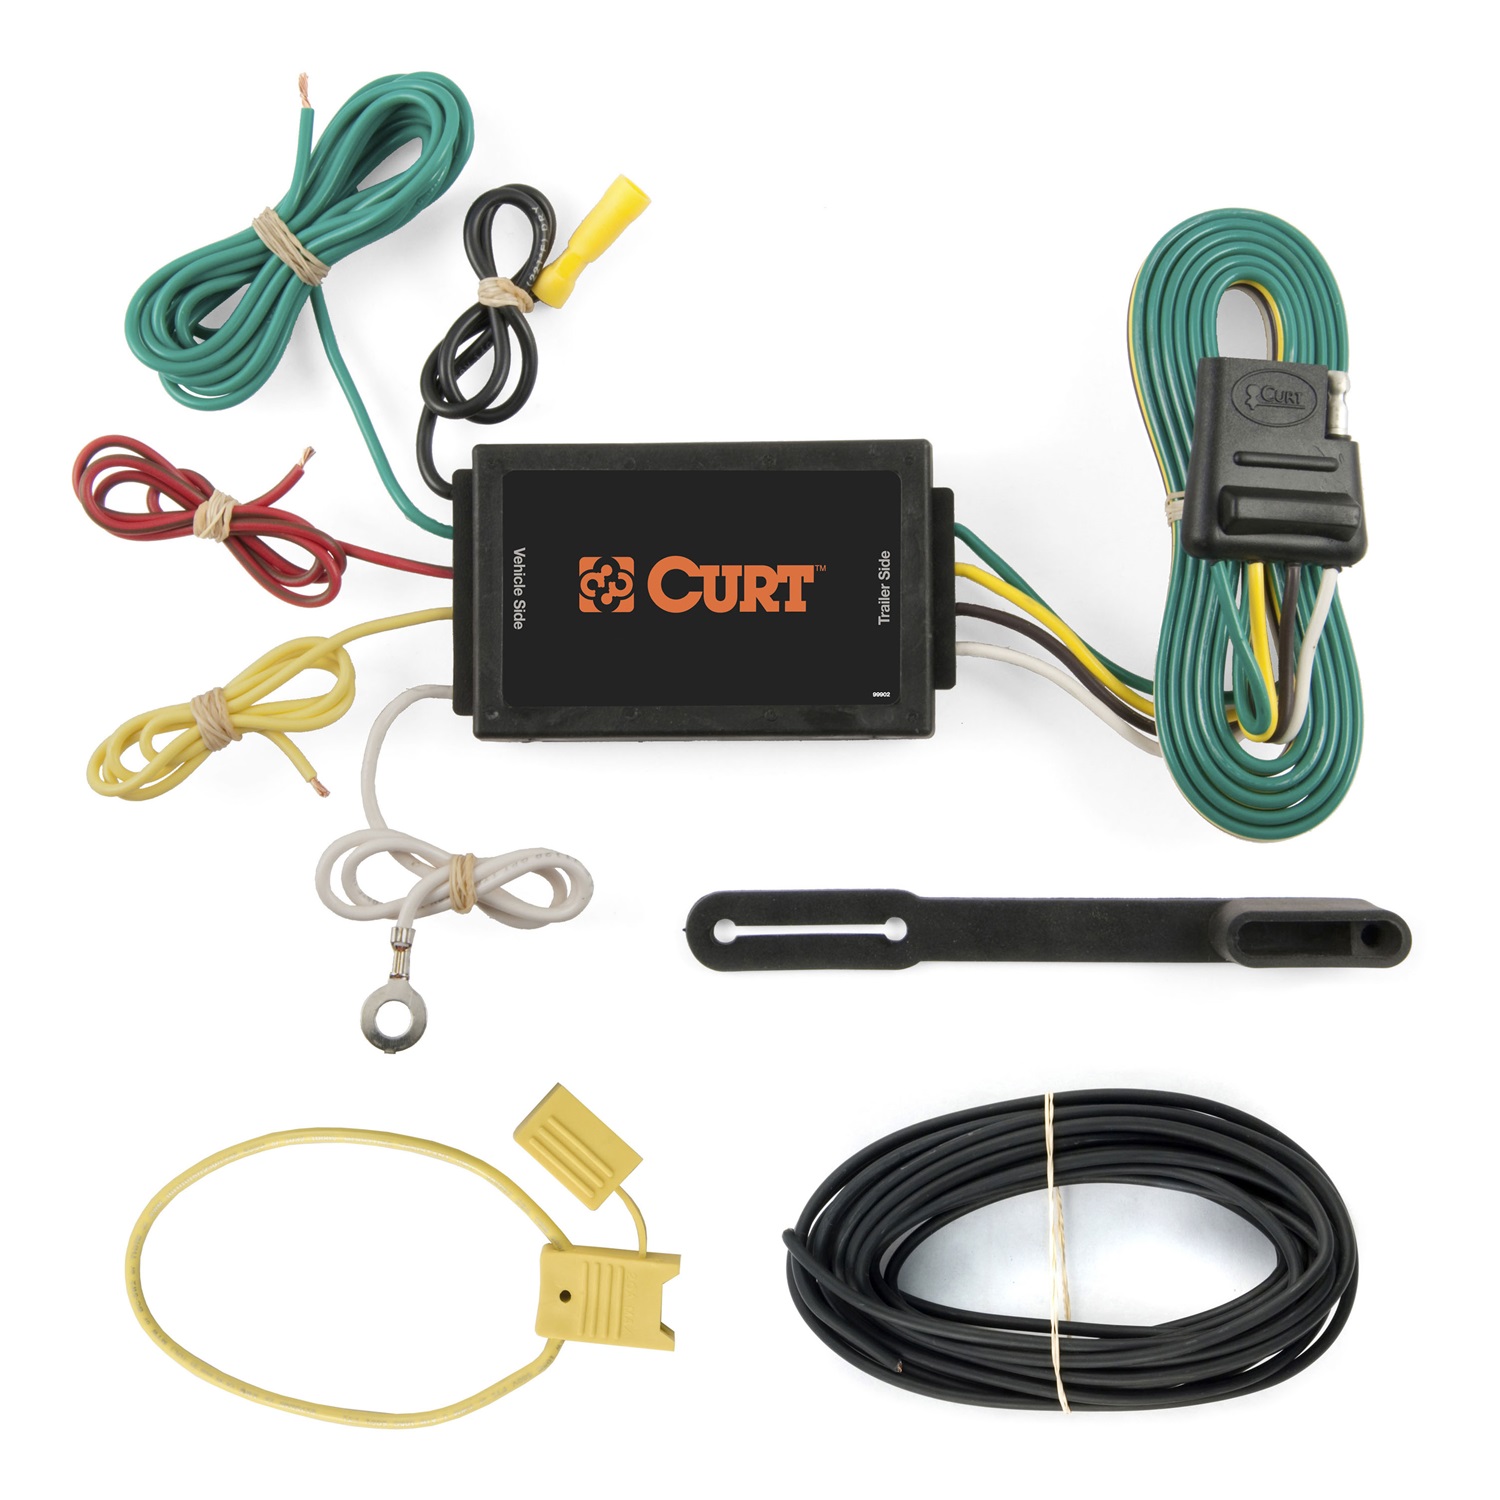 CURT Manufacturing CURT Manufacturing 59200 Wiring Kit  Fits